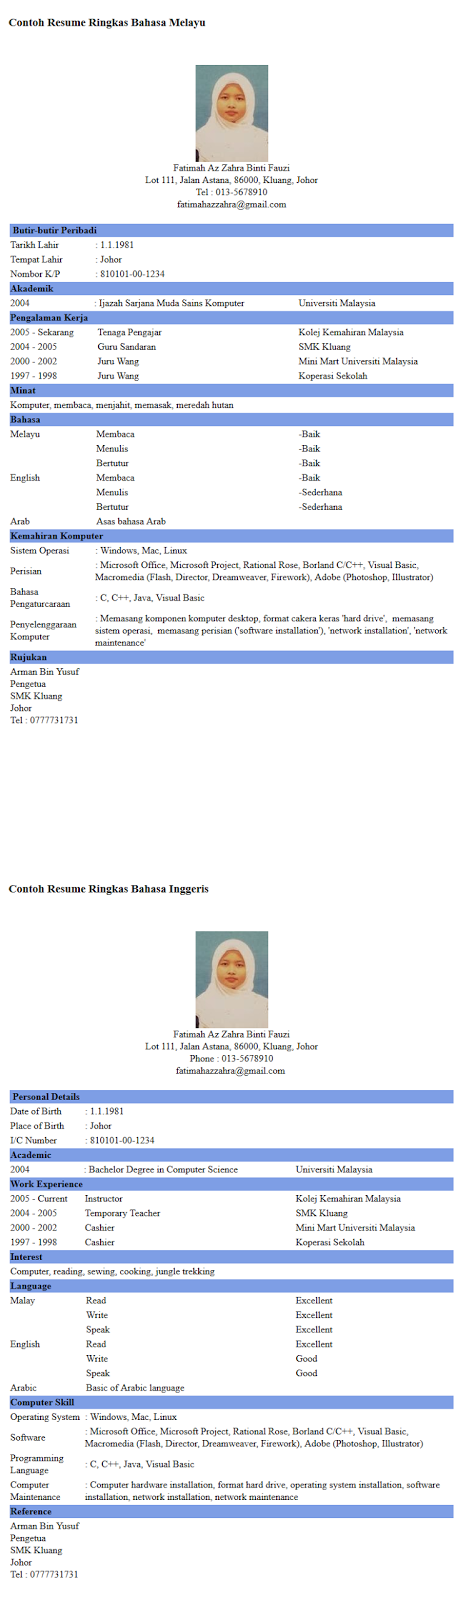 Contoh resume ringkas dalam bahasa Melayu dan bahasa Inggeris